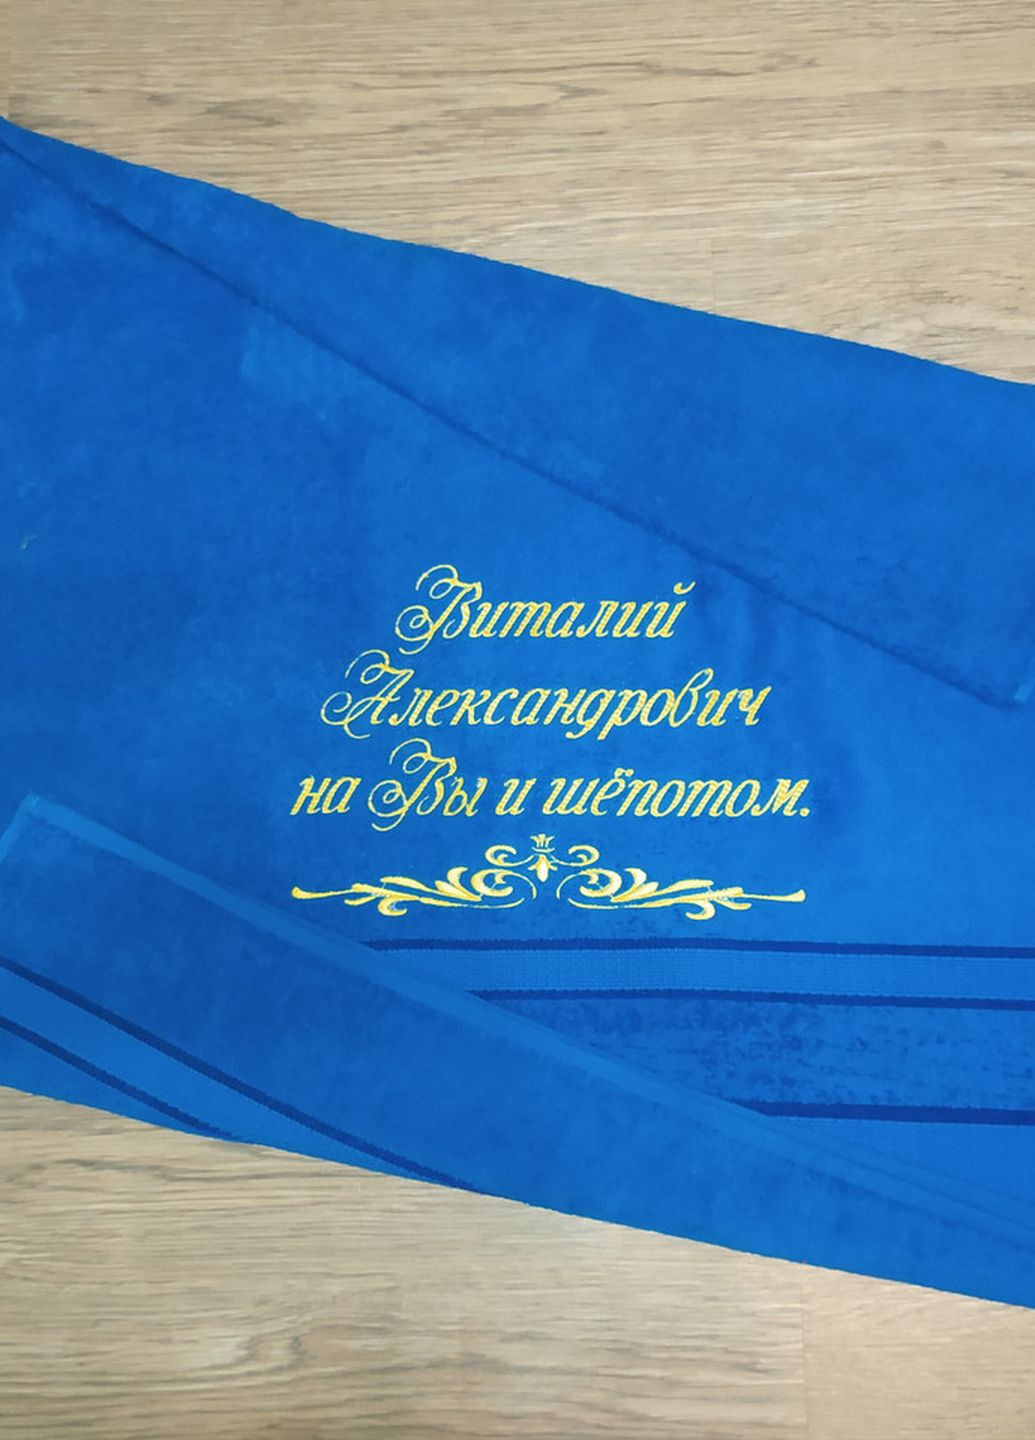 No Brand полотенце с именной вышивкой махровое банное 70*140 синий виталий 00151 однотонный синий производство - Украина